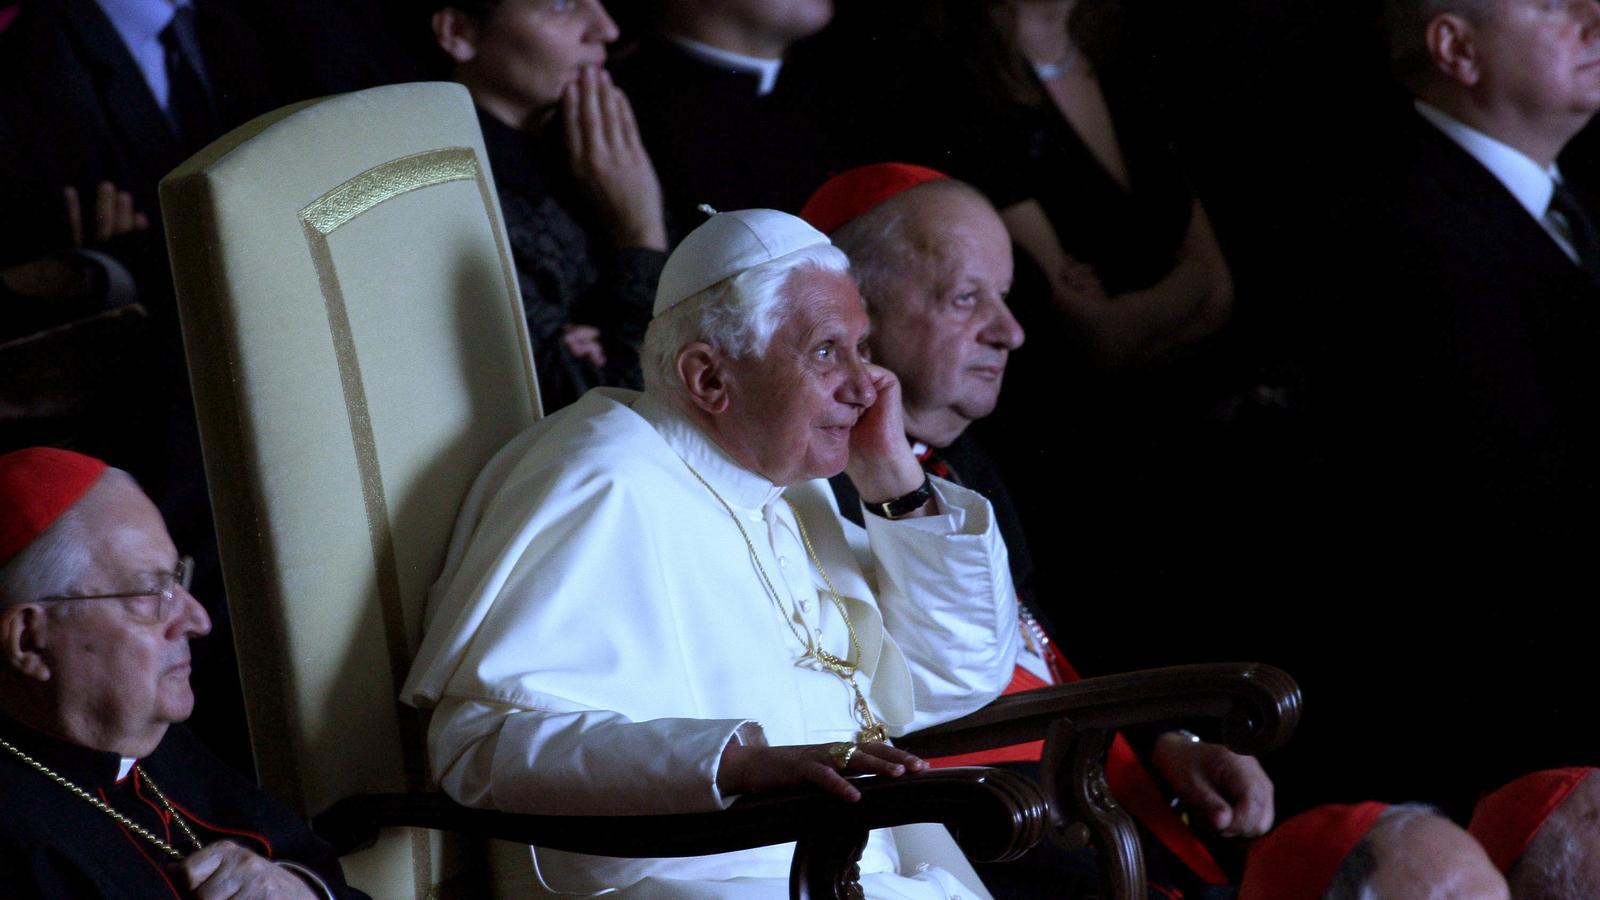 El papa Benet XVI, en una imatge d'arxiu / Franco Origlia / GETTY IMAGES